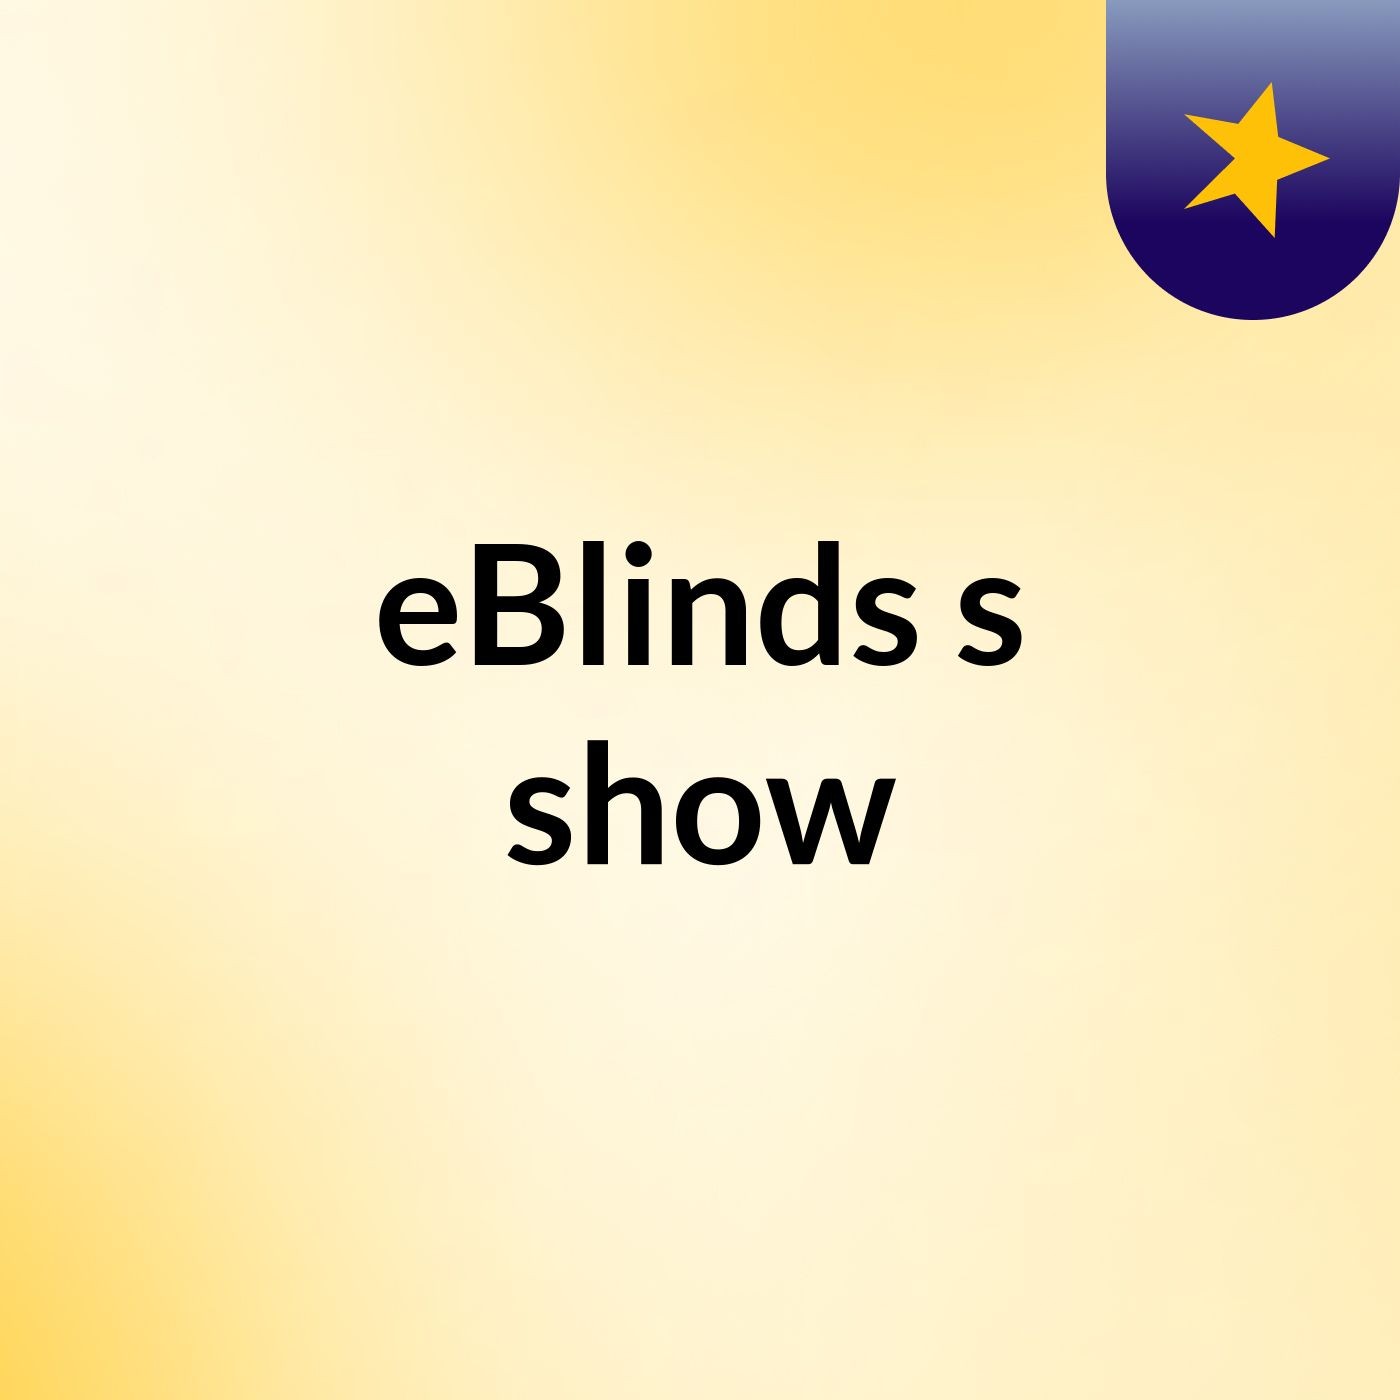 Get a Range of Standard Roller Blinds from eBlinds Australia